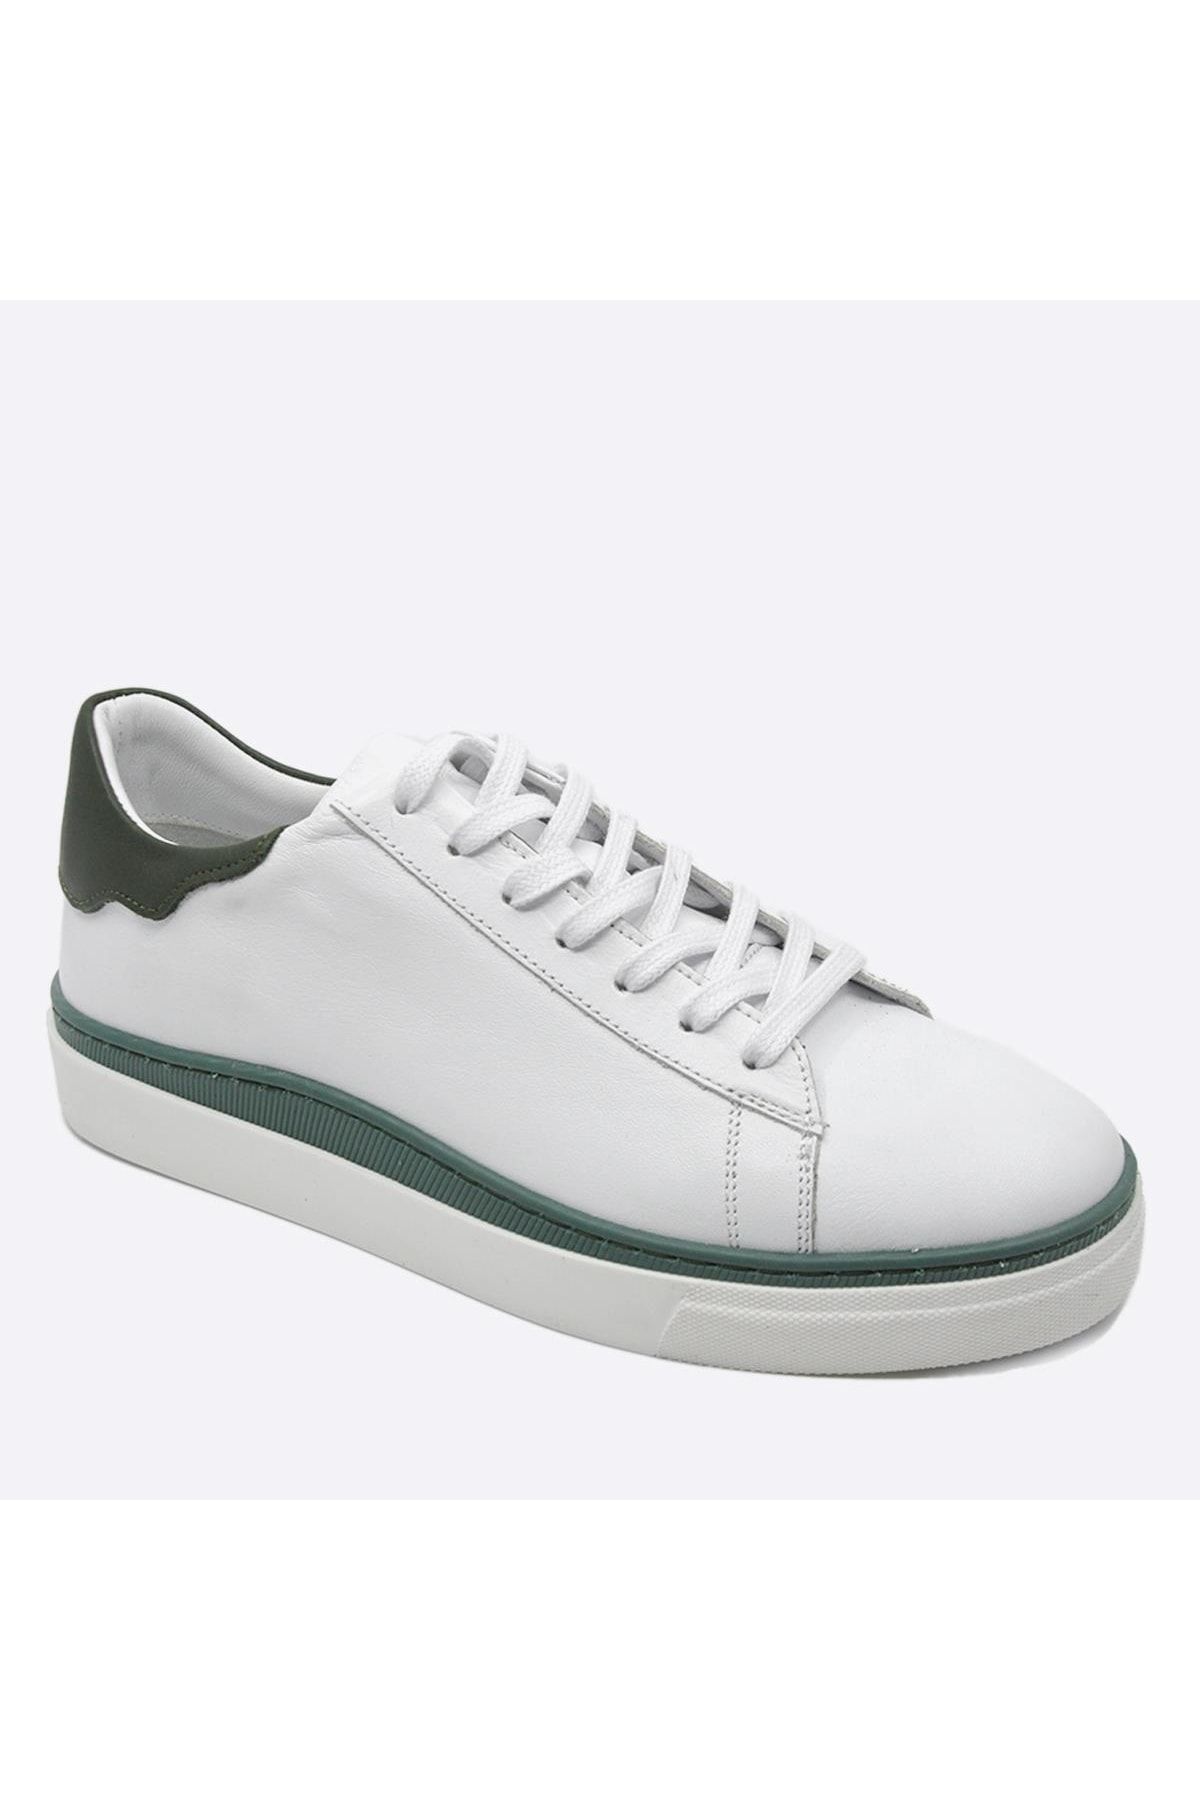 Fosco Hakiki Deri Sneaker Erkek Ayakkabı Beyaz Yeşil 9842